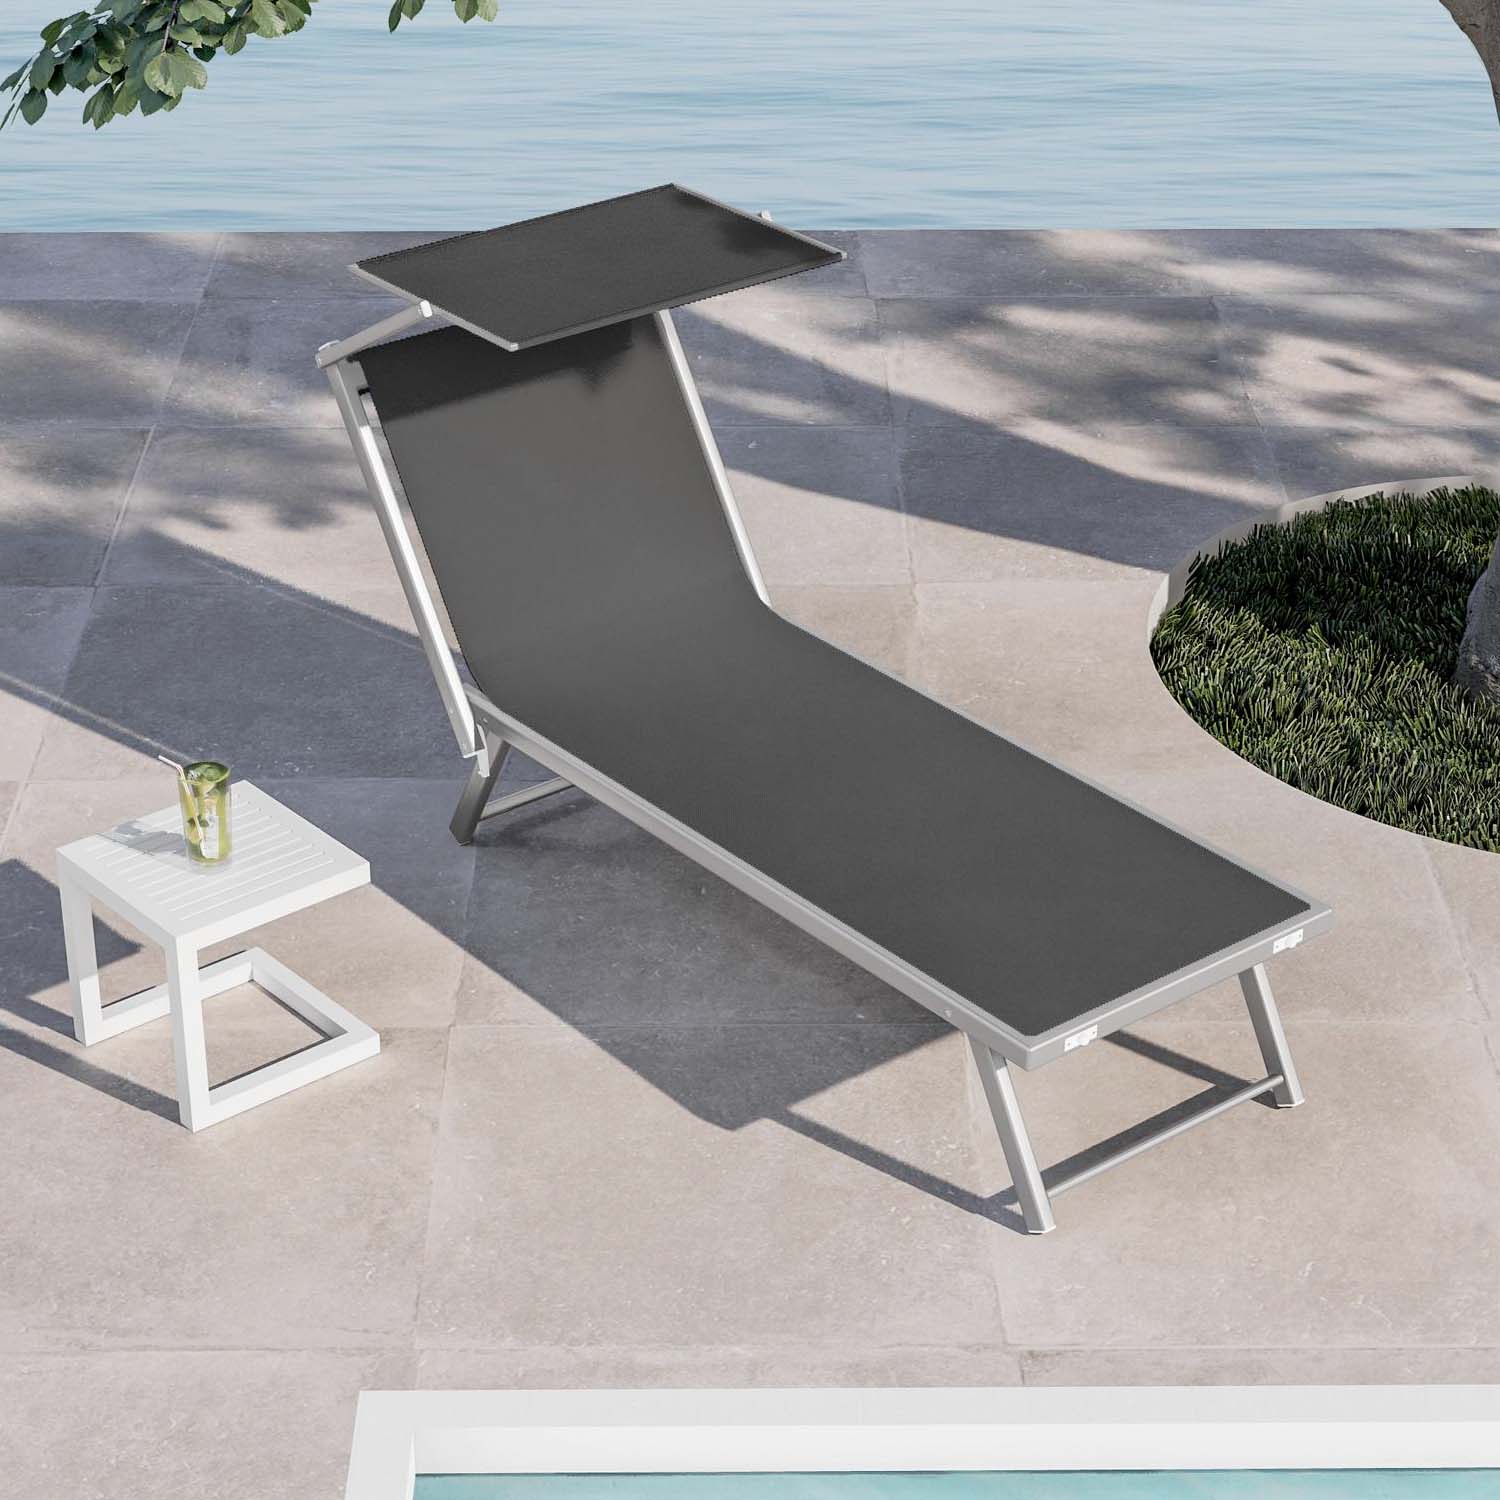 Rimini - Lettino prendisole in alluminio e textilene con schienale reclinabile e tettuccio parasole orientabile. Lettino da spiaggia, giardino o bordo piscina grigio 180x60xH38 cm